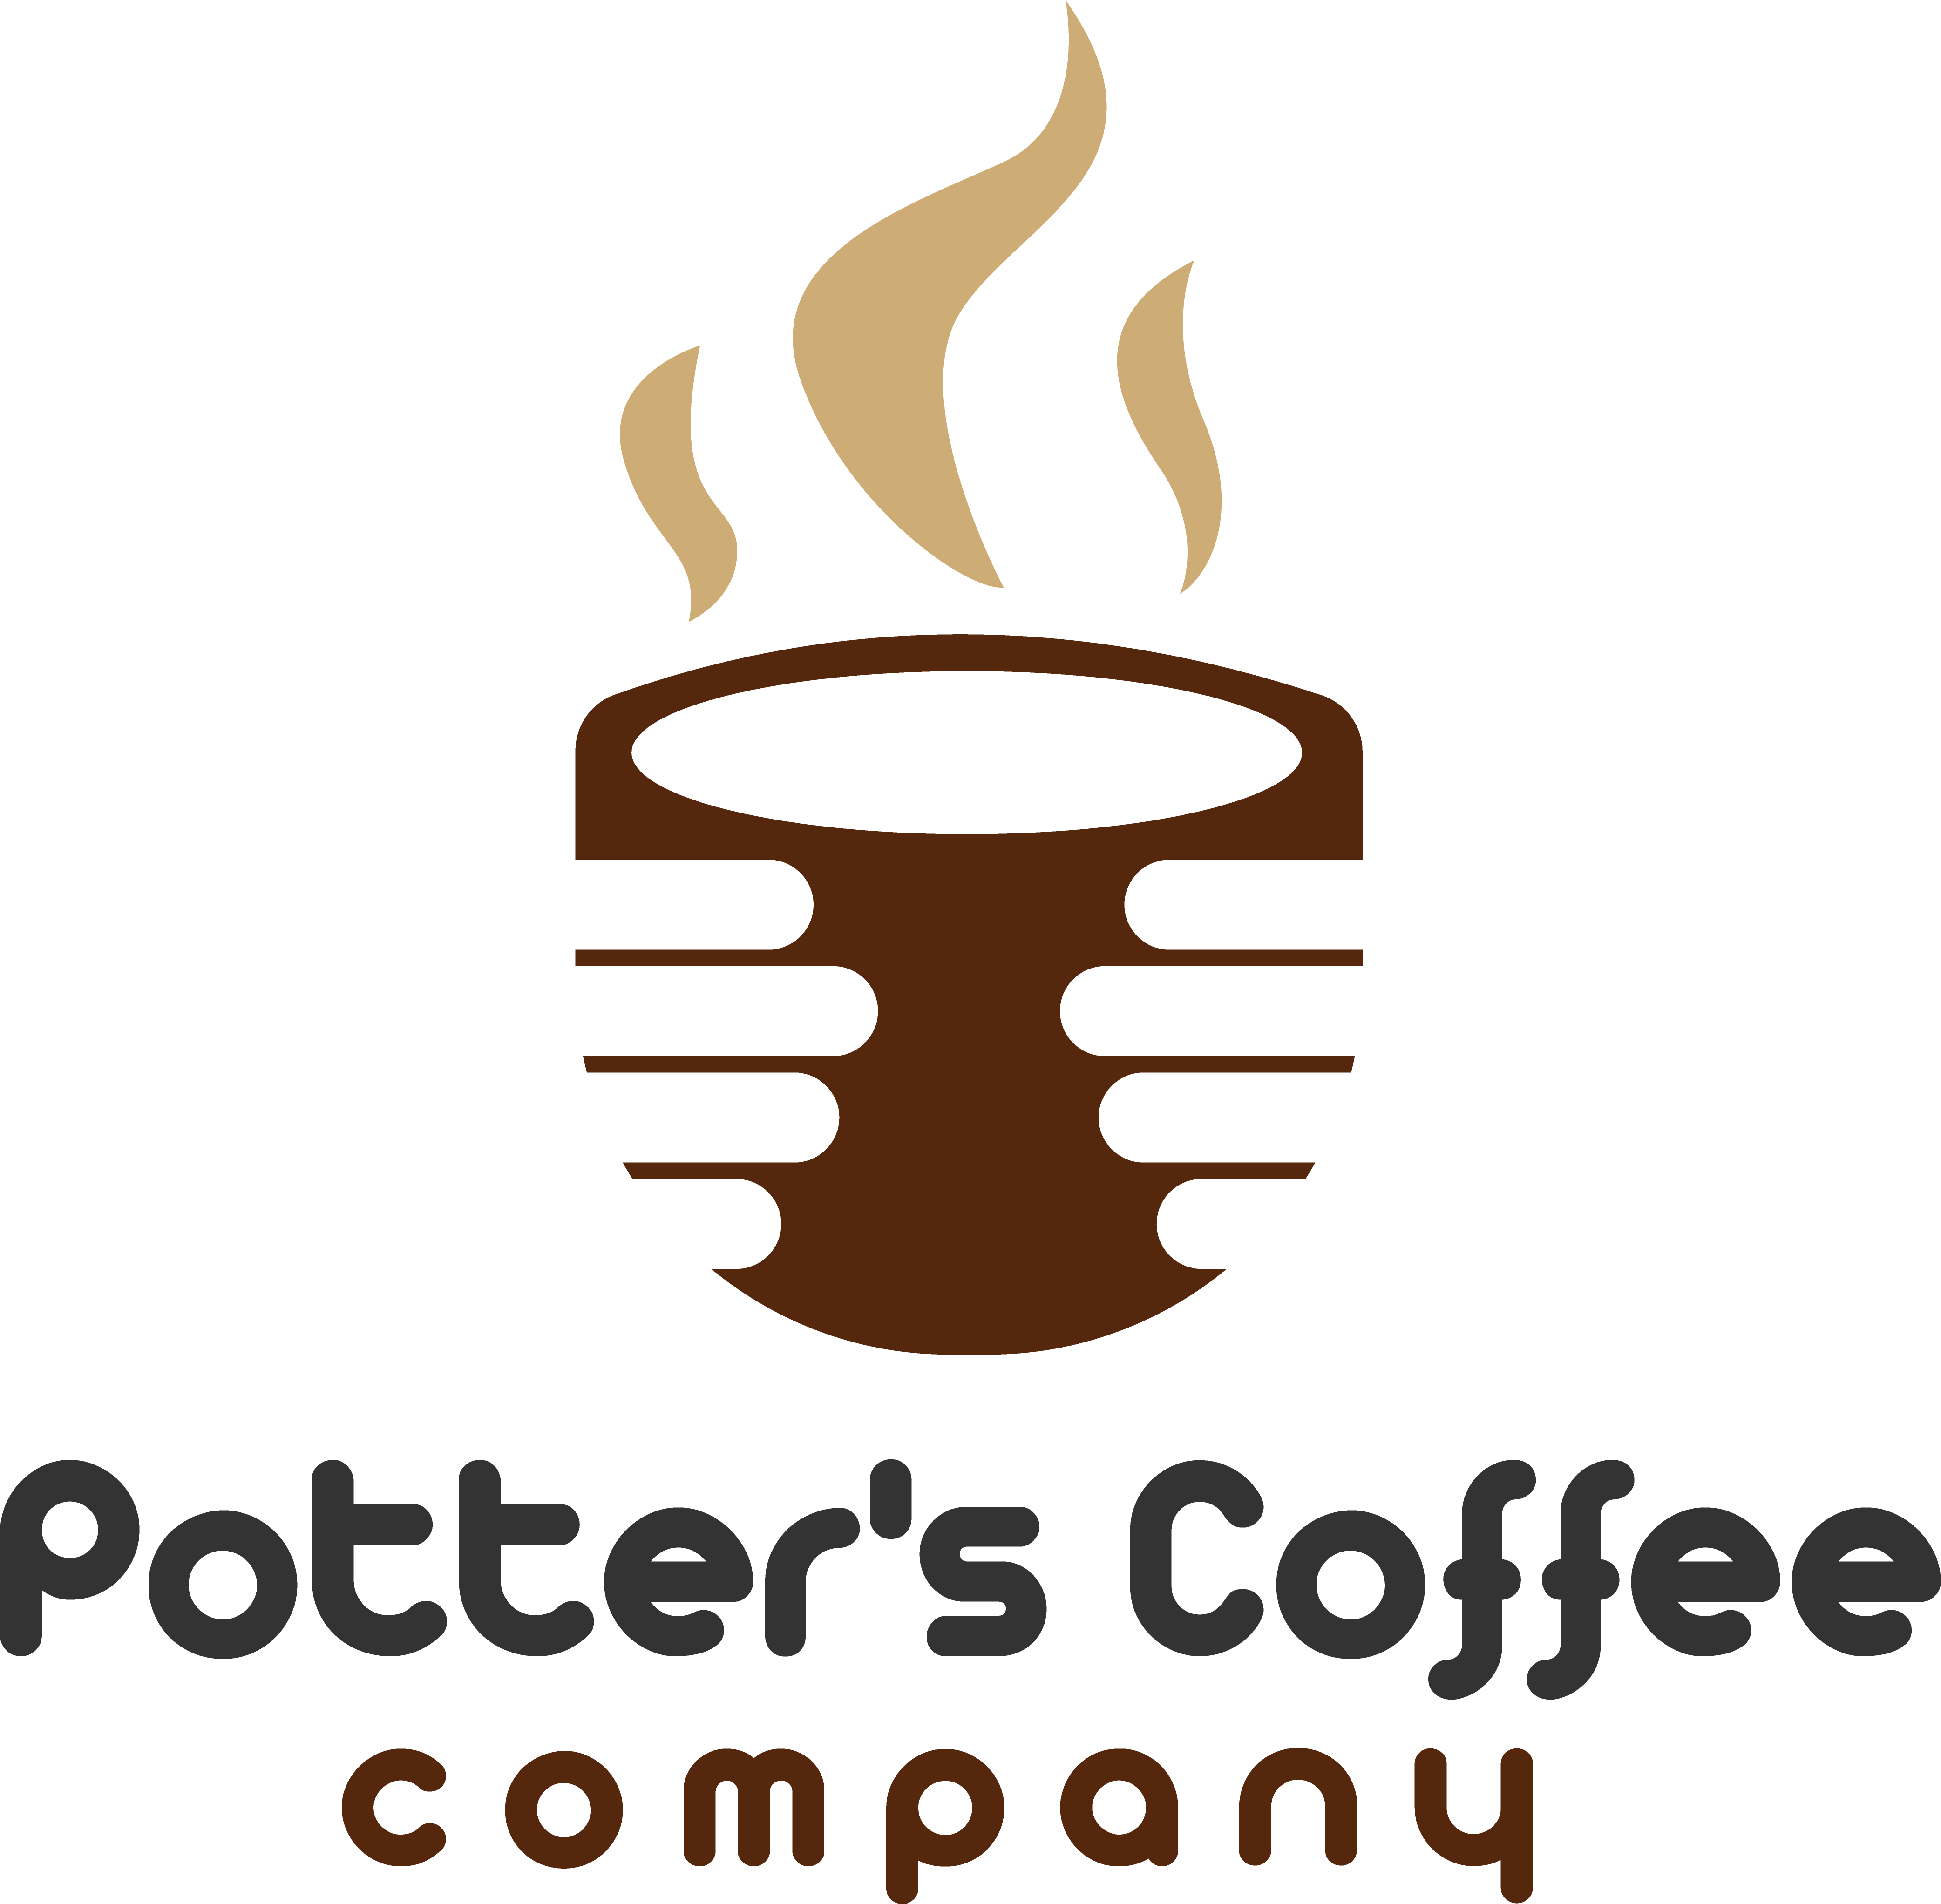 Potter's Coffee Company